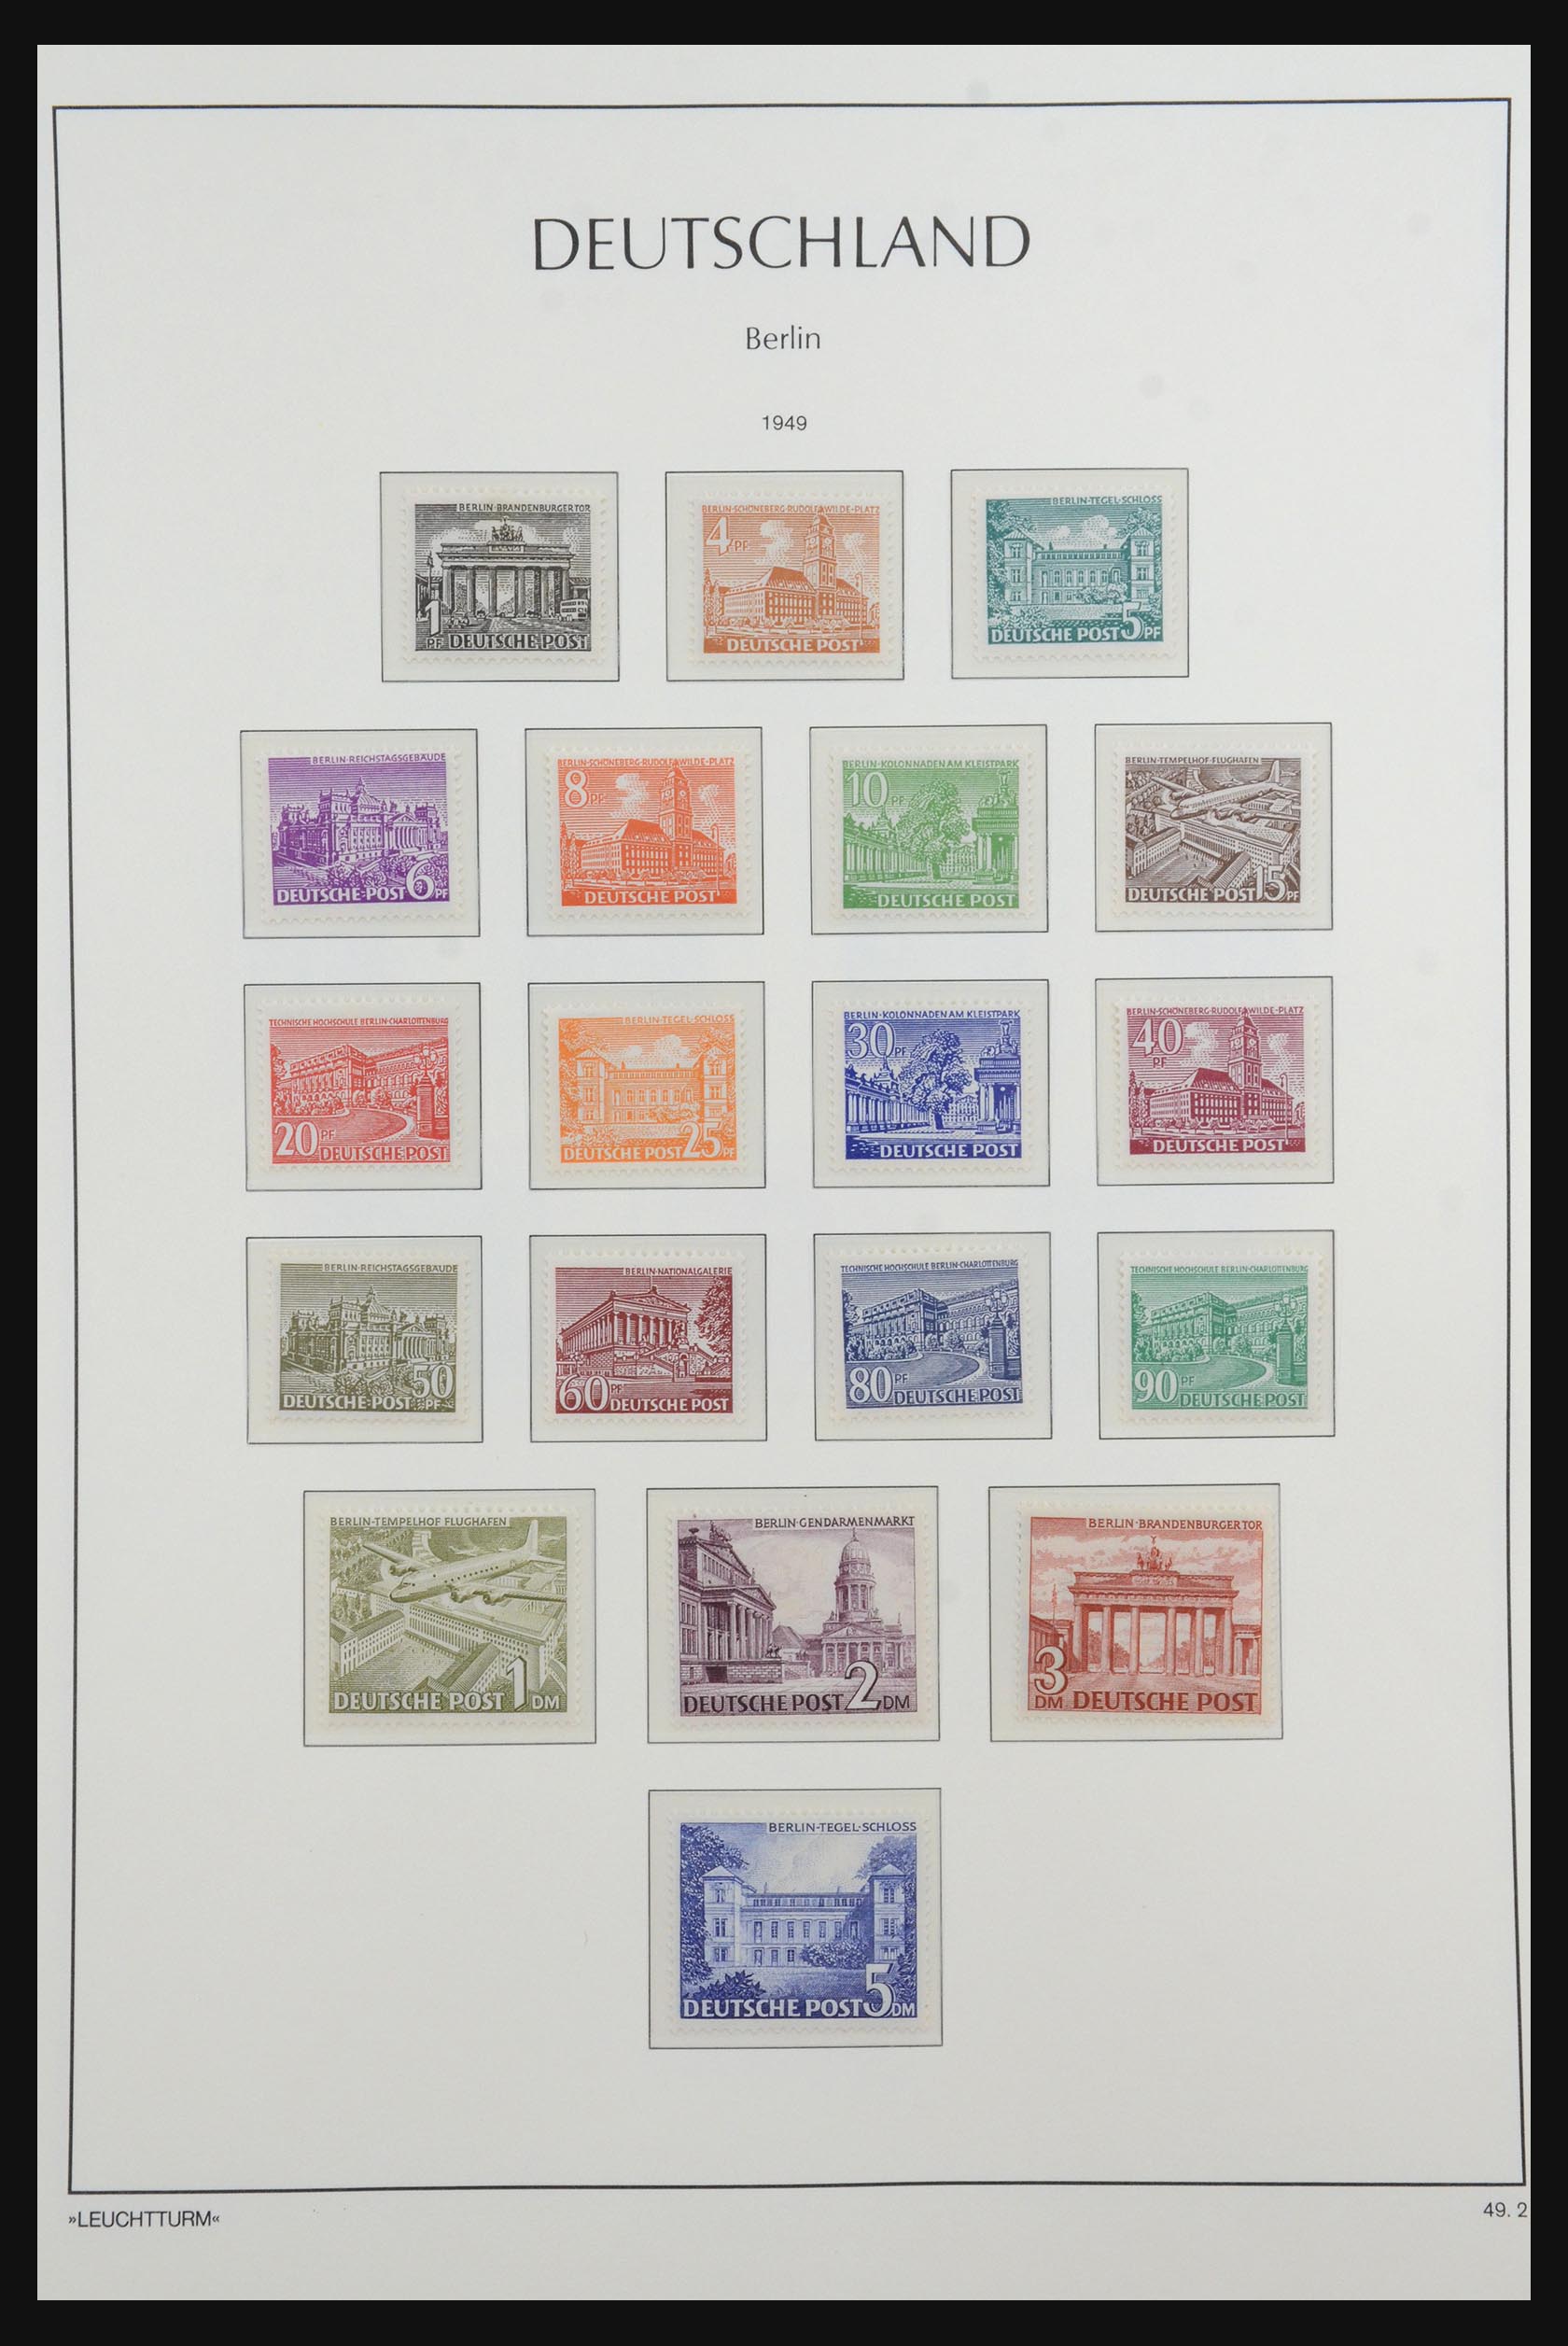 31601 003 - 31601 Bundespost, Berlijn en Saar 1948-2008.